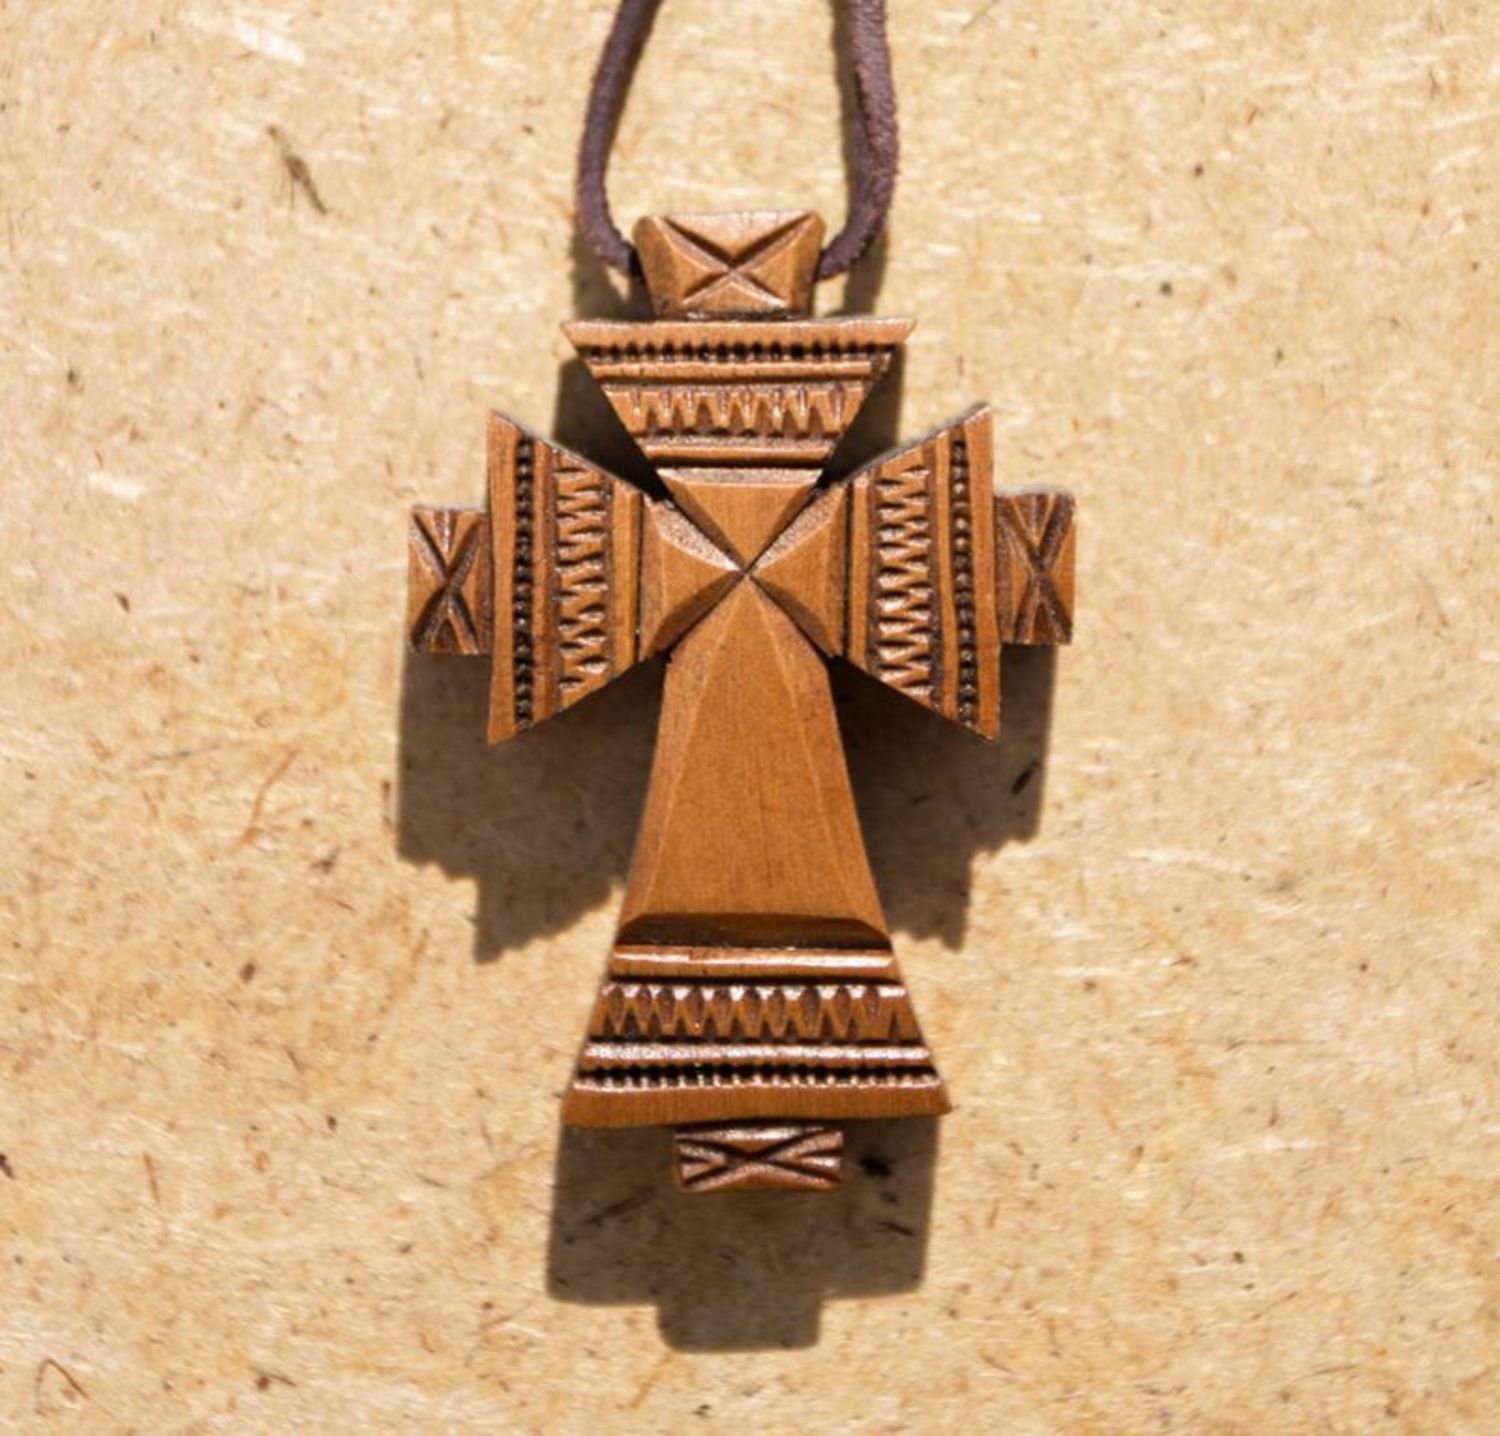 Cruz colgante de madera “Molino” en cordón de cuero foto 1